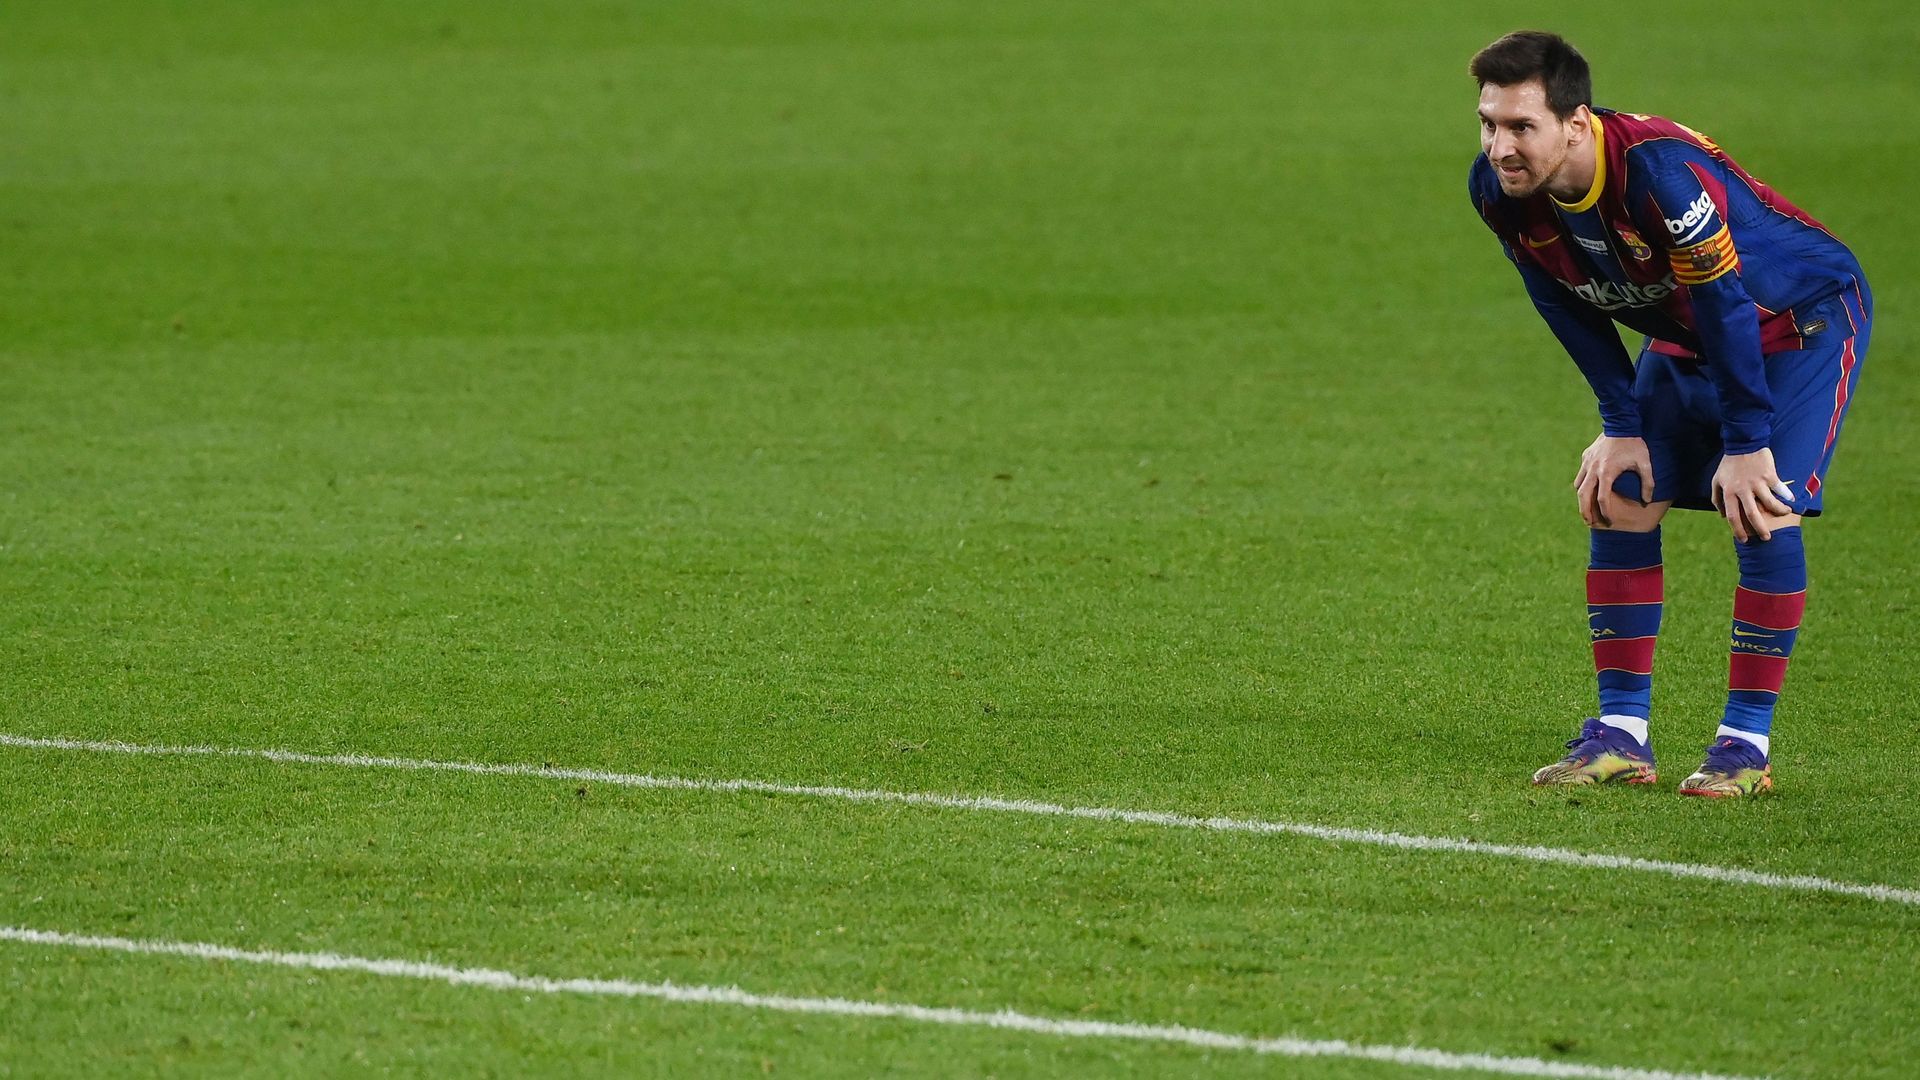 4,40 Euro pro Sekunde und “Respekt“ - das verdient Lionel Messi